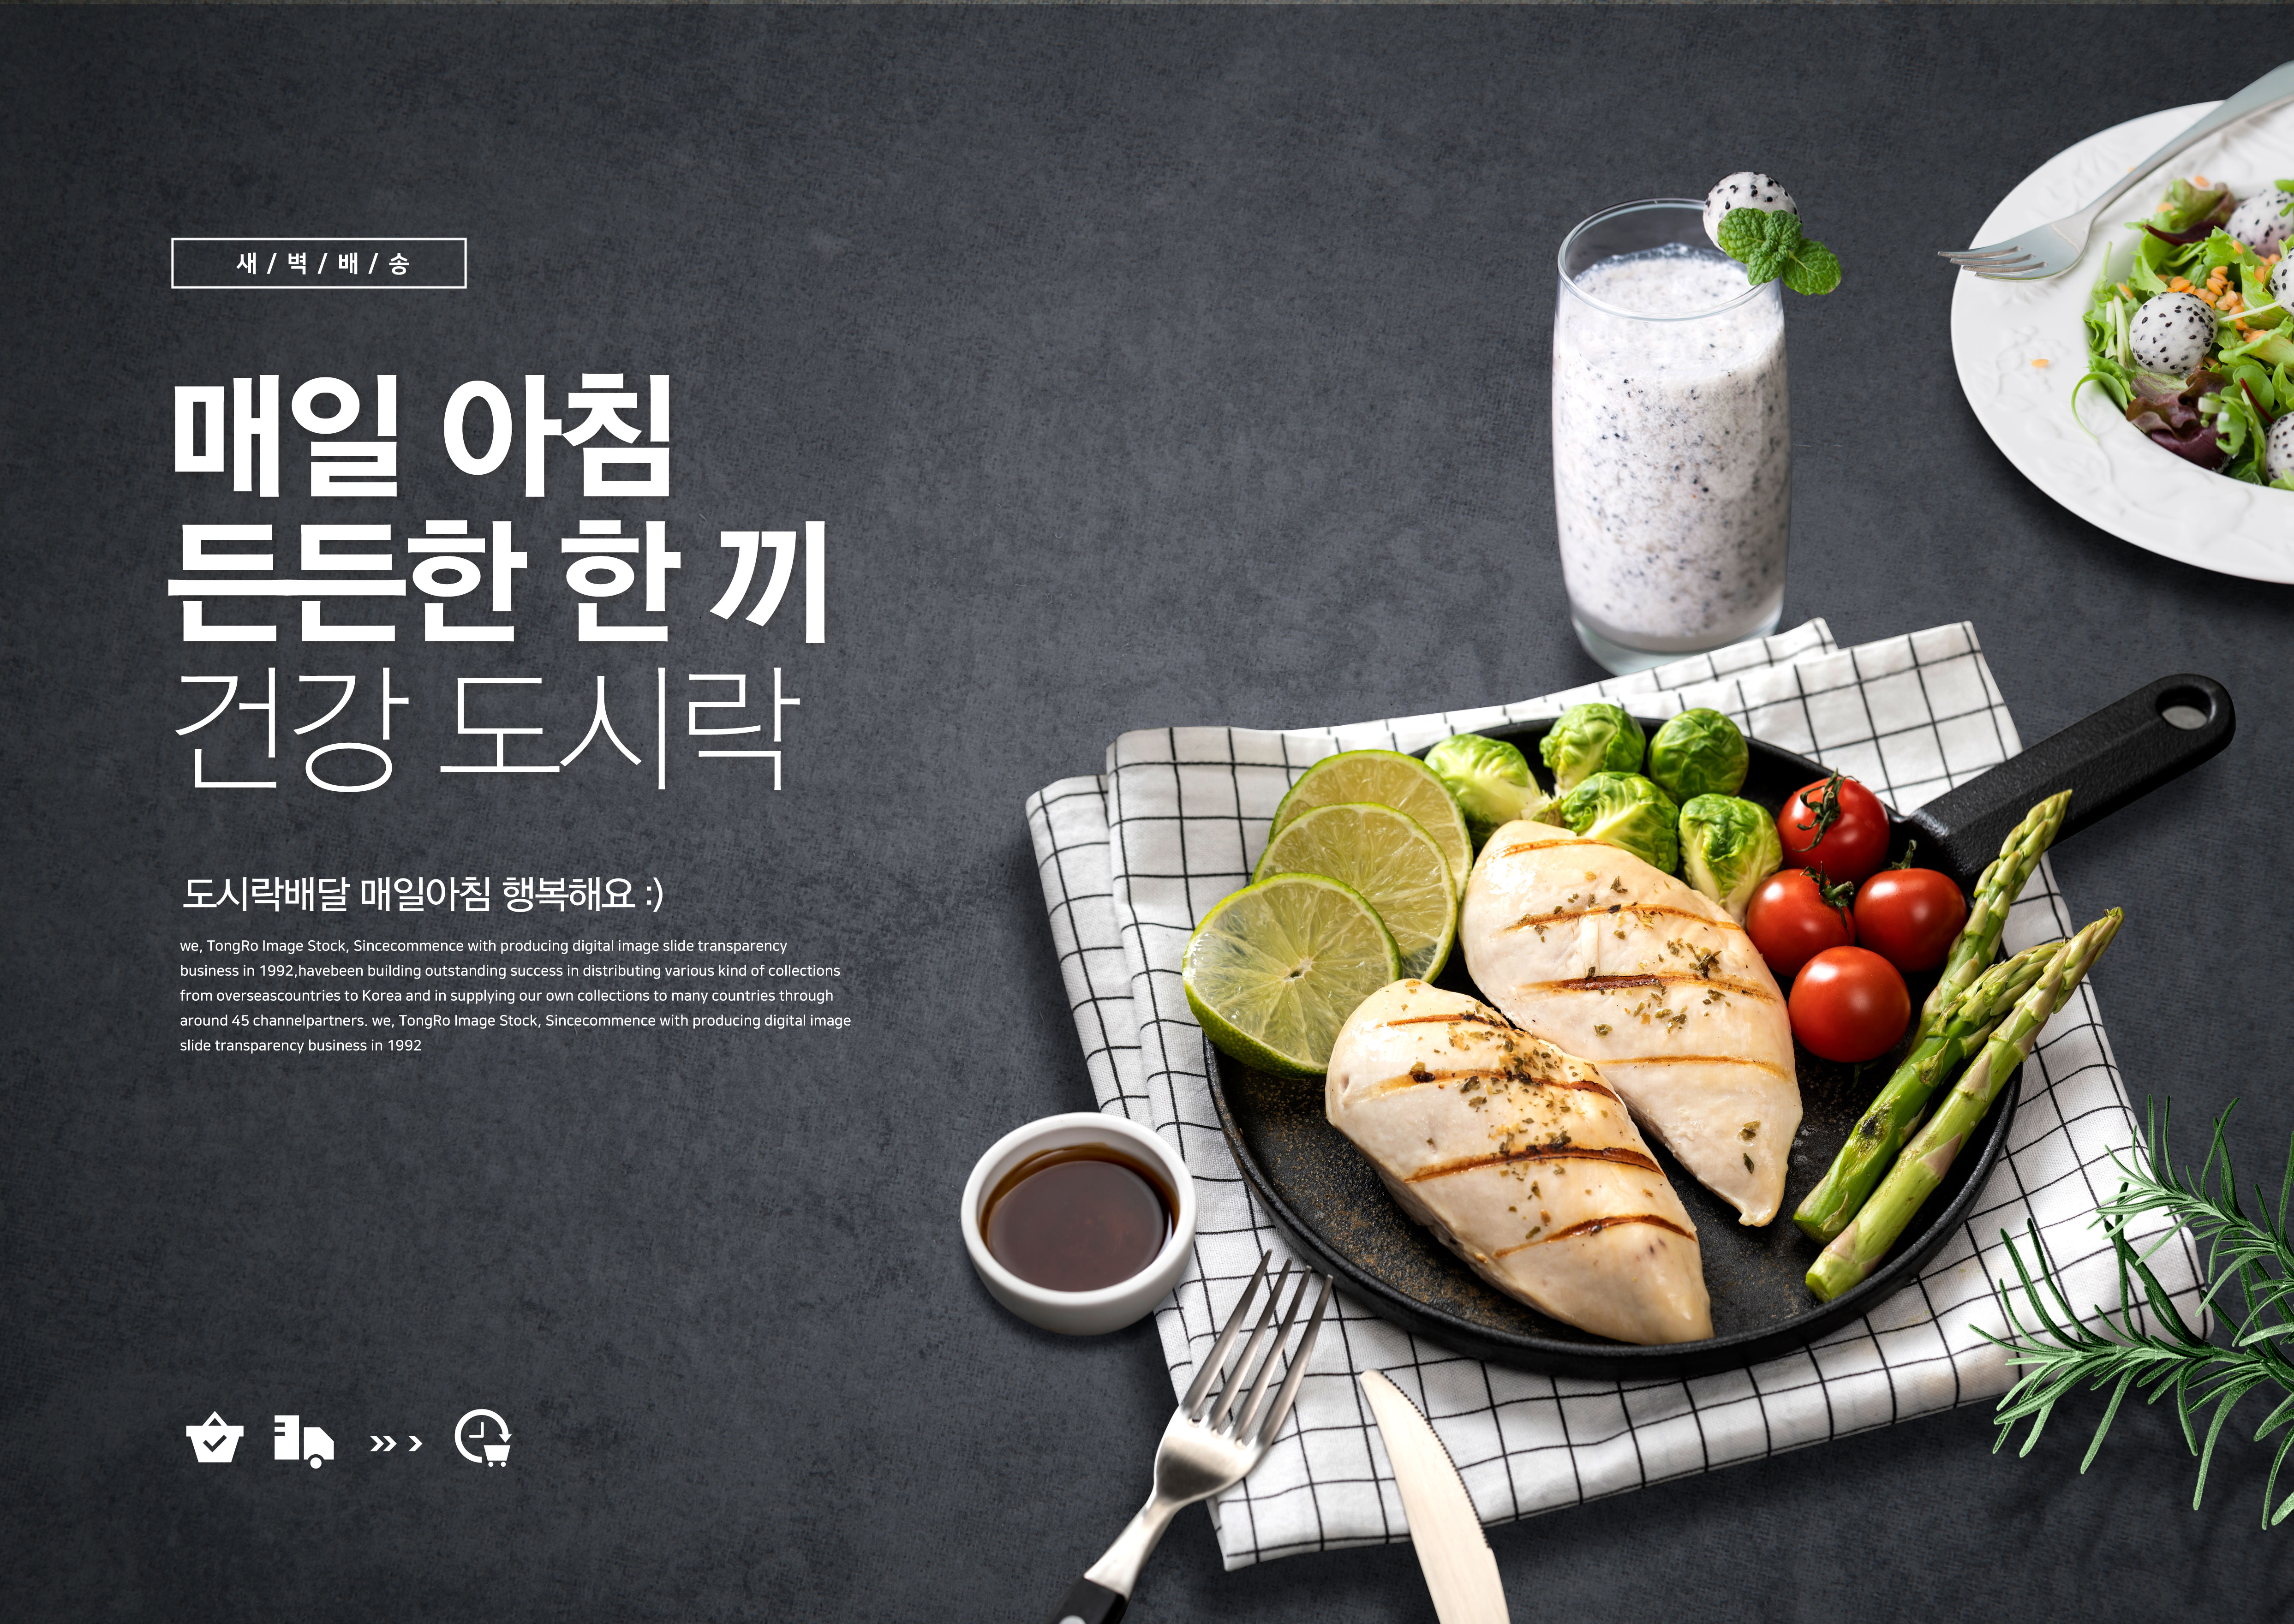 绿色有机食品海报设计素材套装[PSD]插图(5)